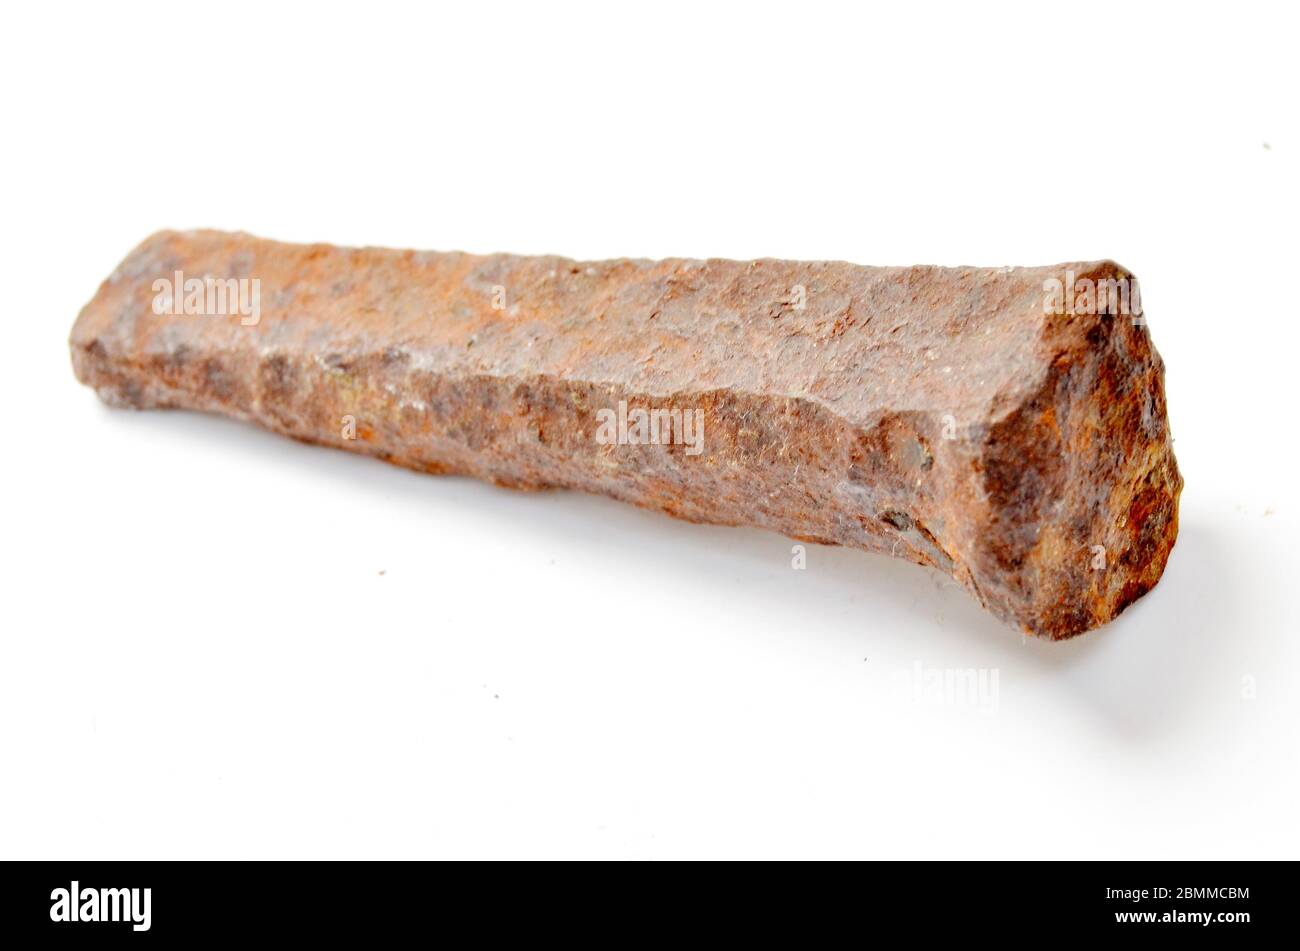 Alte rostige Metallspitze oder großer Nagel, die in einem alten Steinbruch gefunden wurden Stockfoto